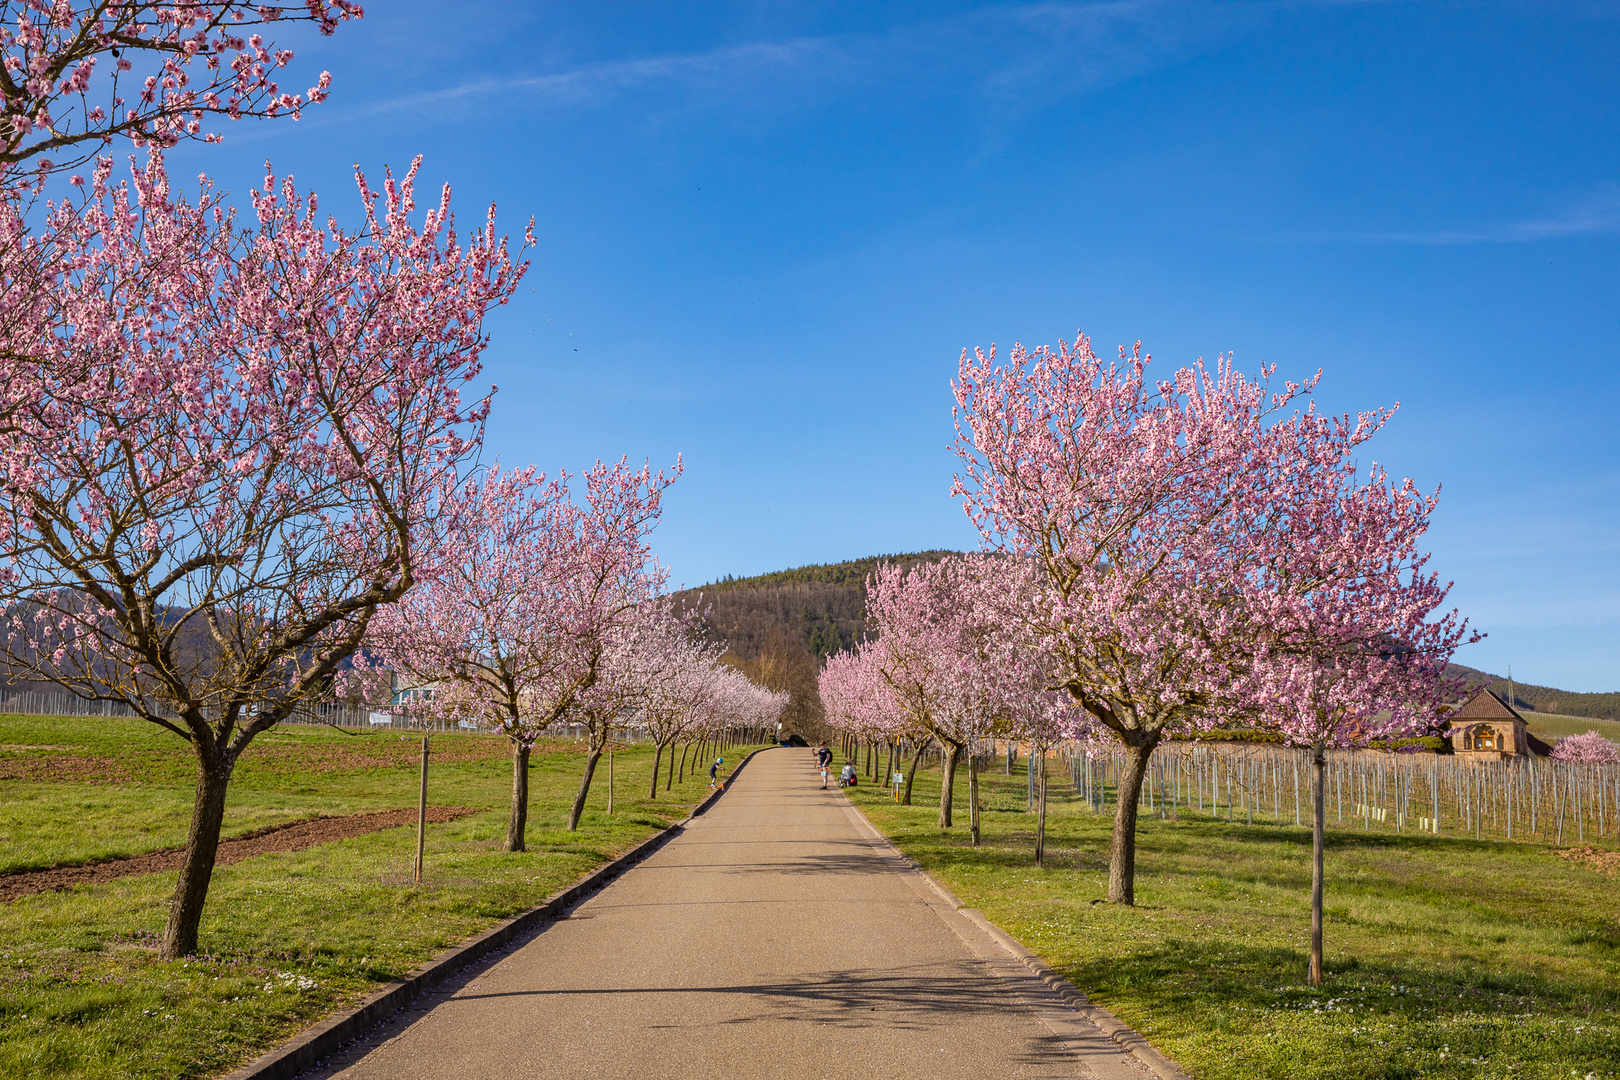 Mandelblütenallee in der Südpfalz